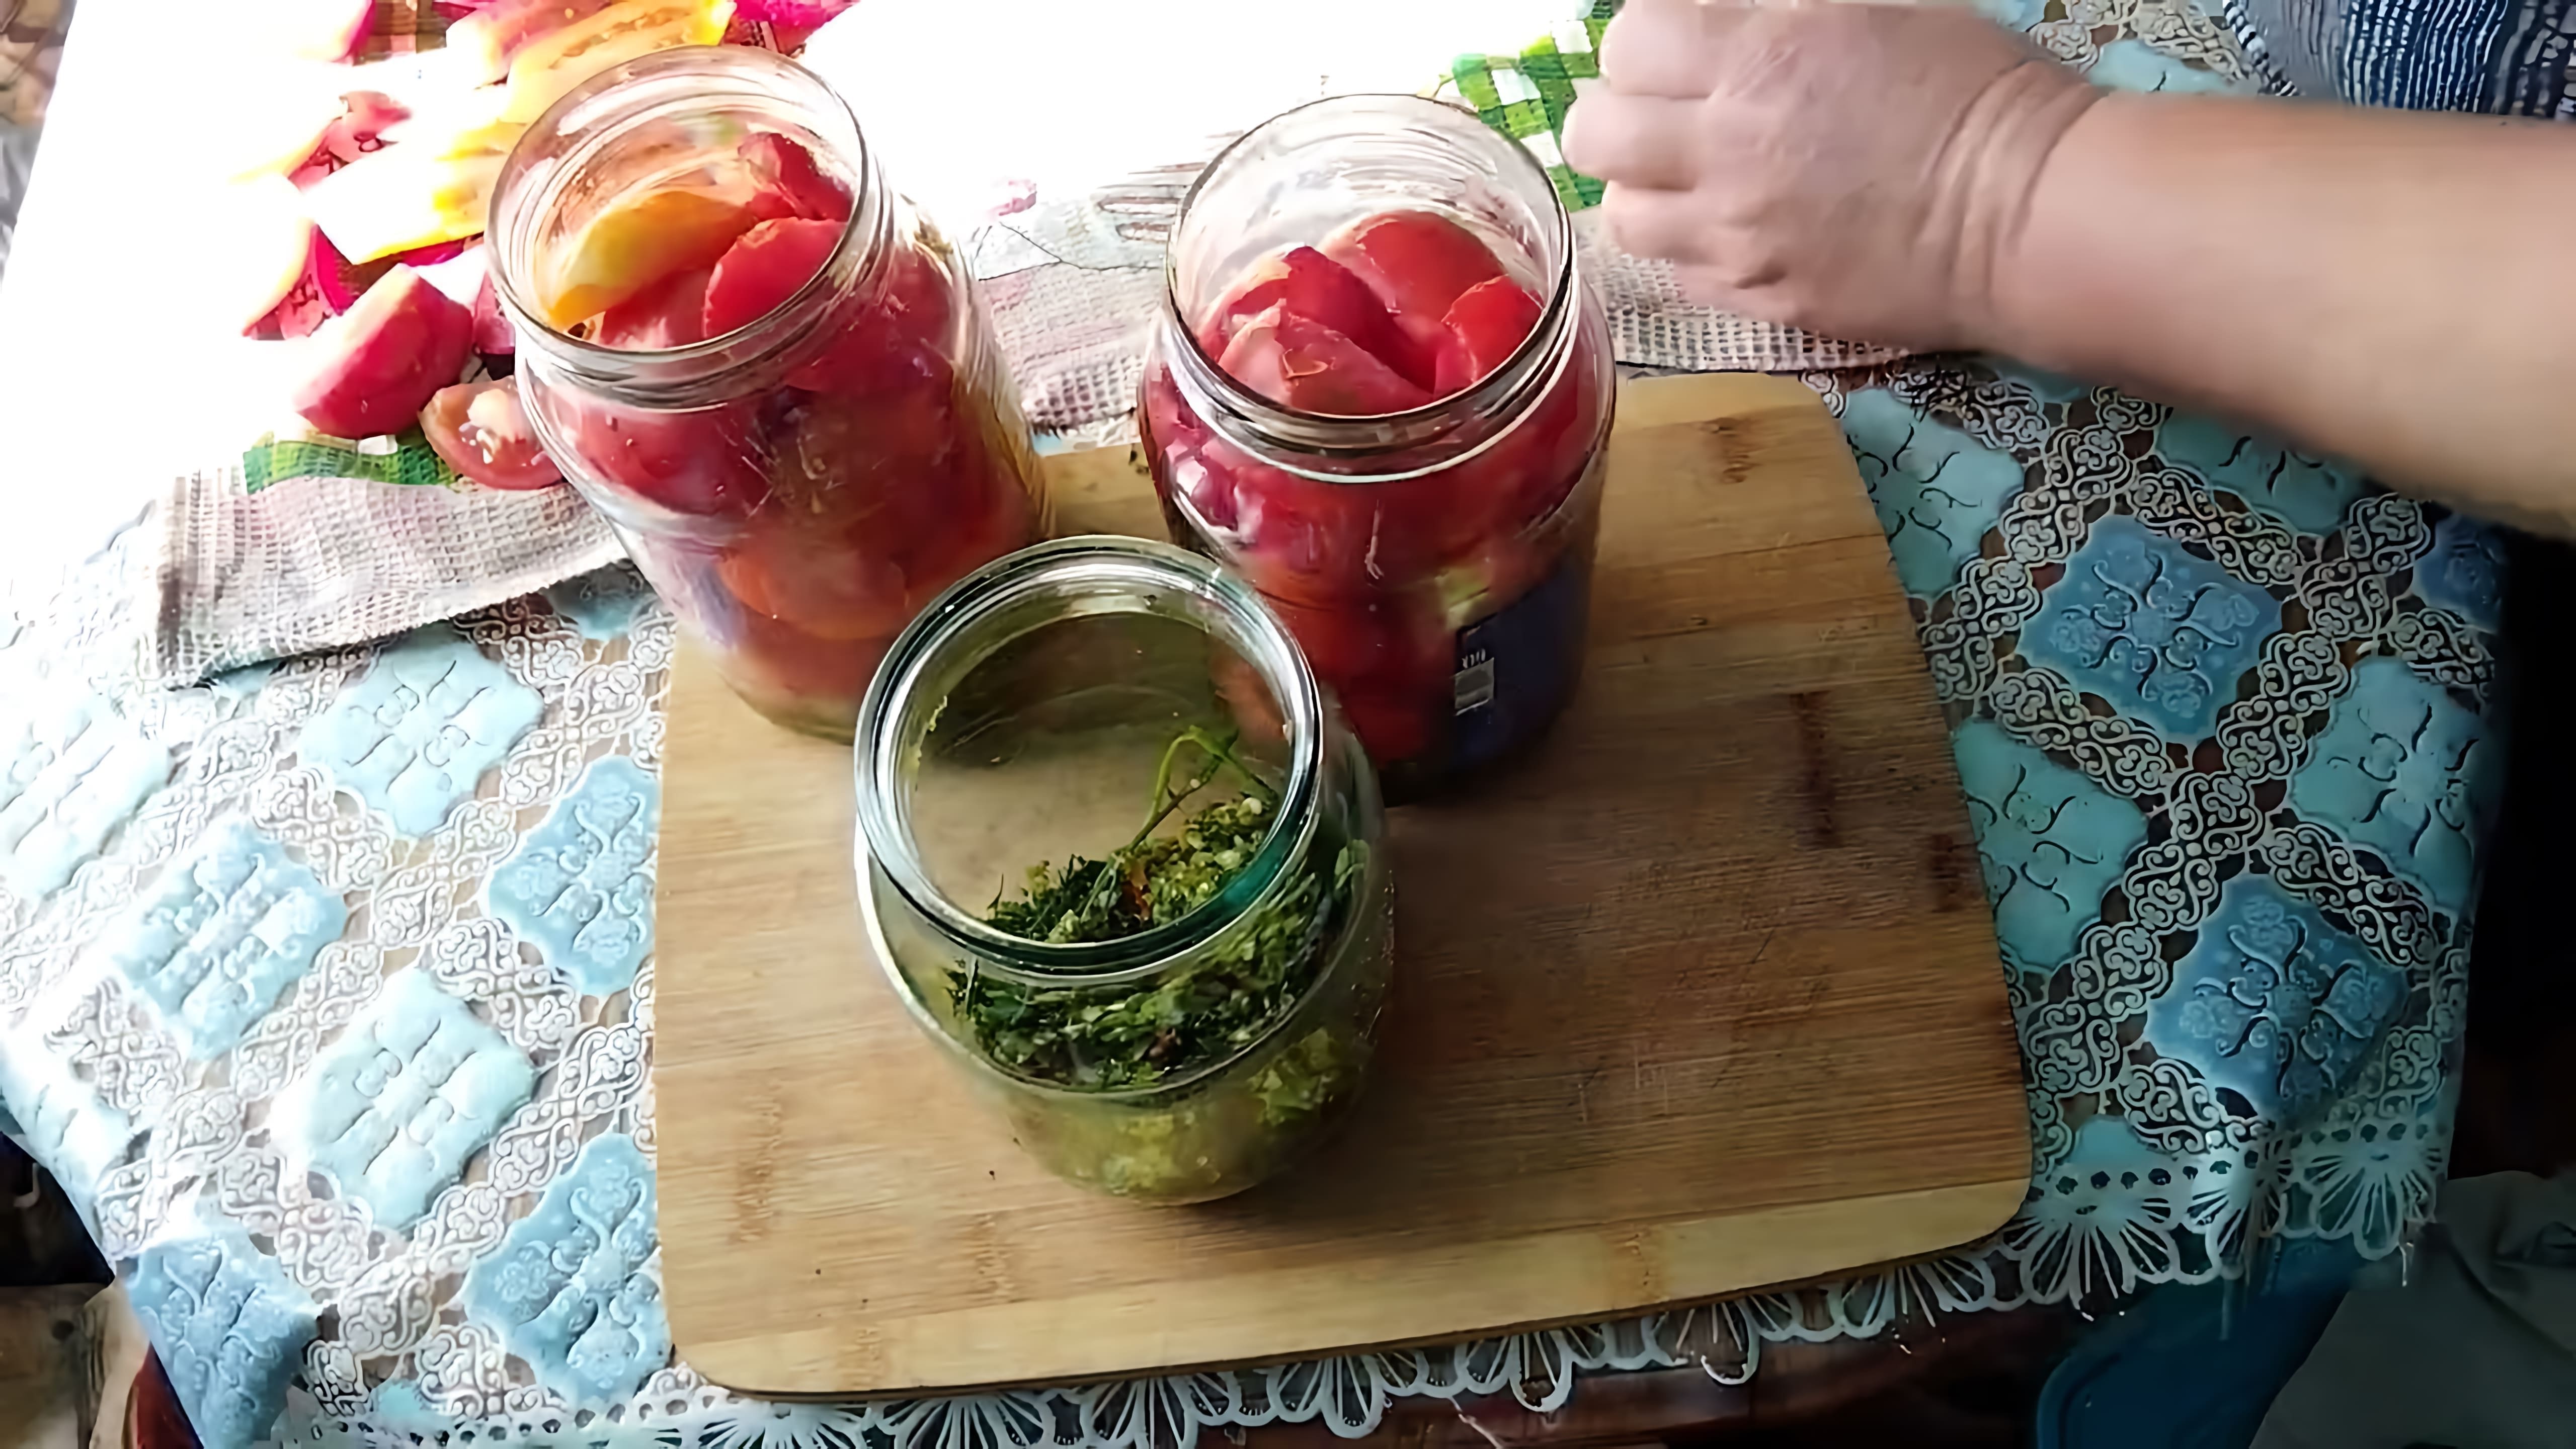 В этом видео демонстрируется процесс приготовления вкусных помидоров на зиму, которые называются "Армянчики"